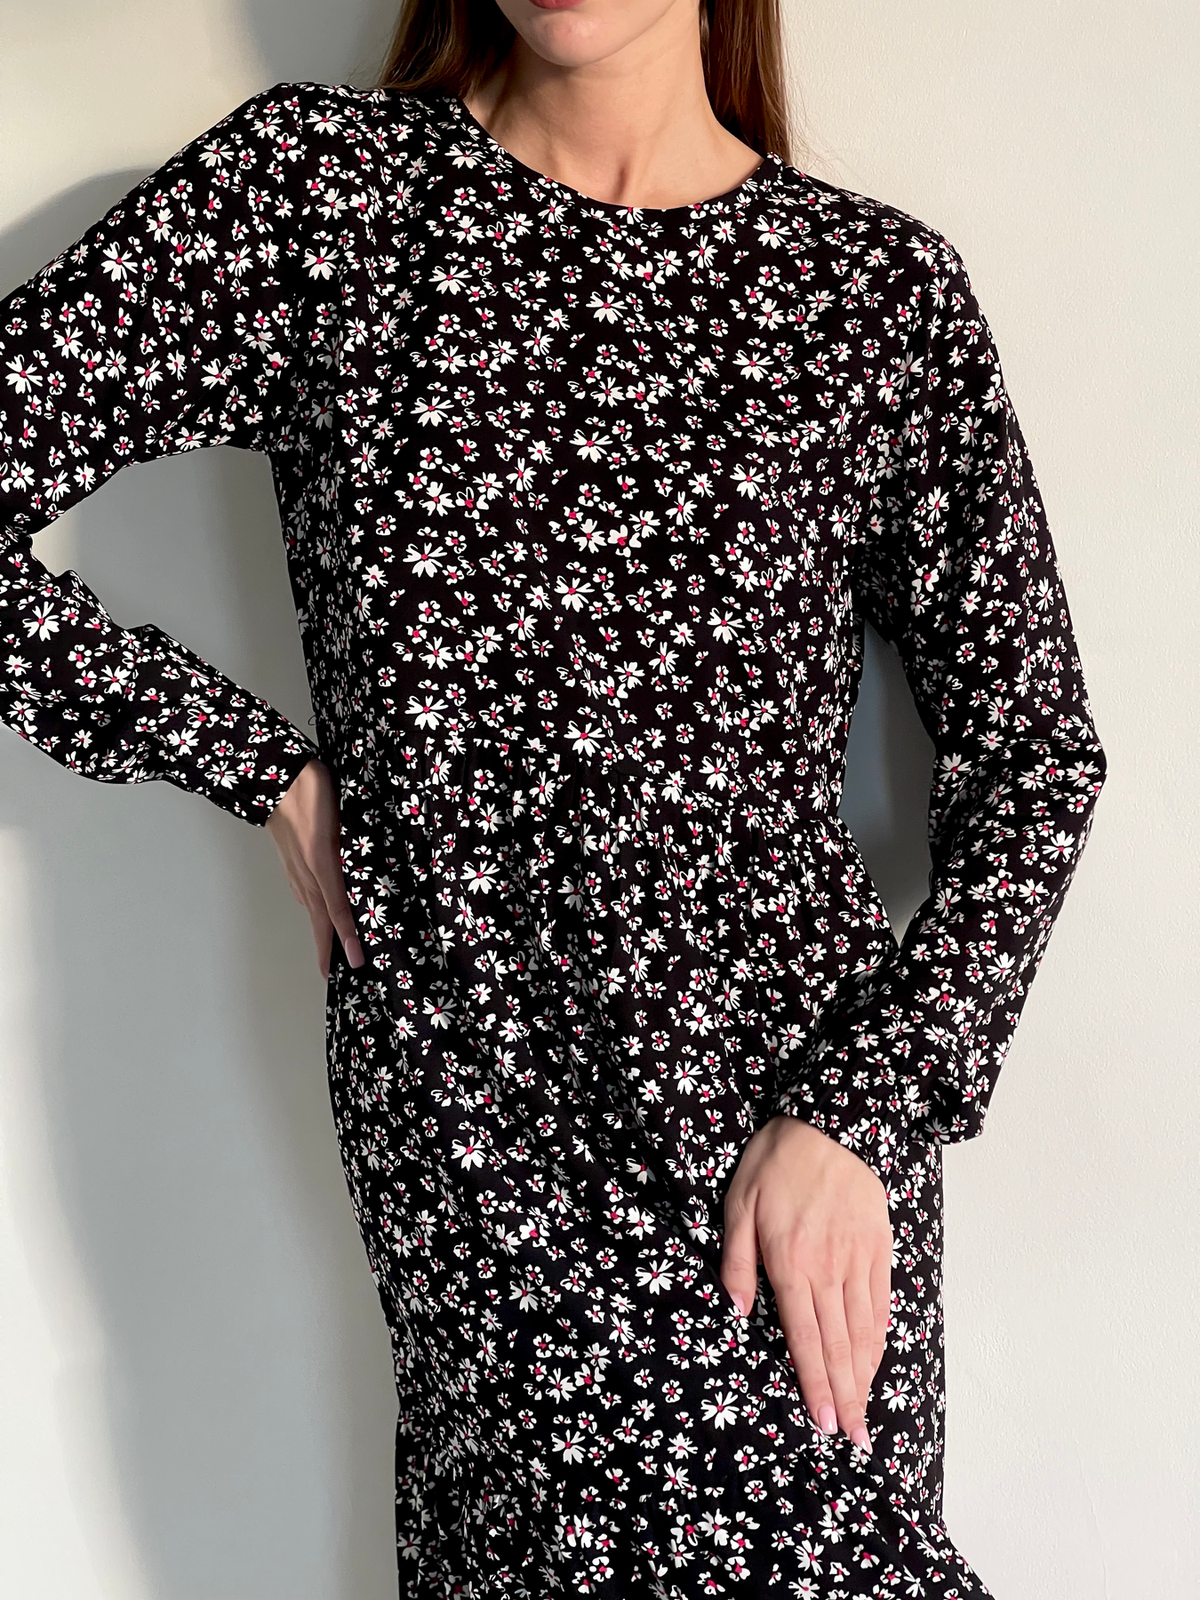 Купить Длинное платье в цветочек из штапеля с длинным рукавом Merlini Корсо 700001183, размер 42-44 (S-M) в интернет-магазине